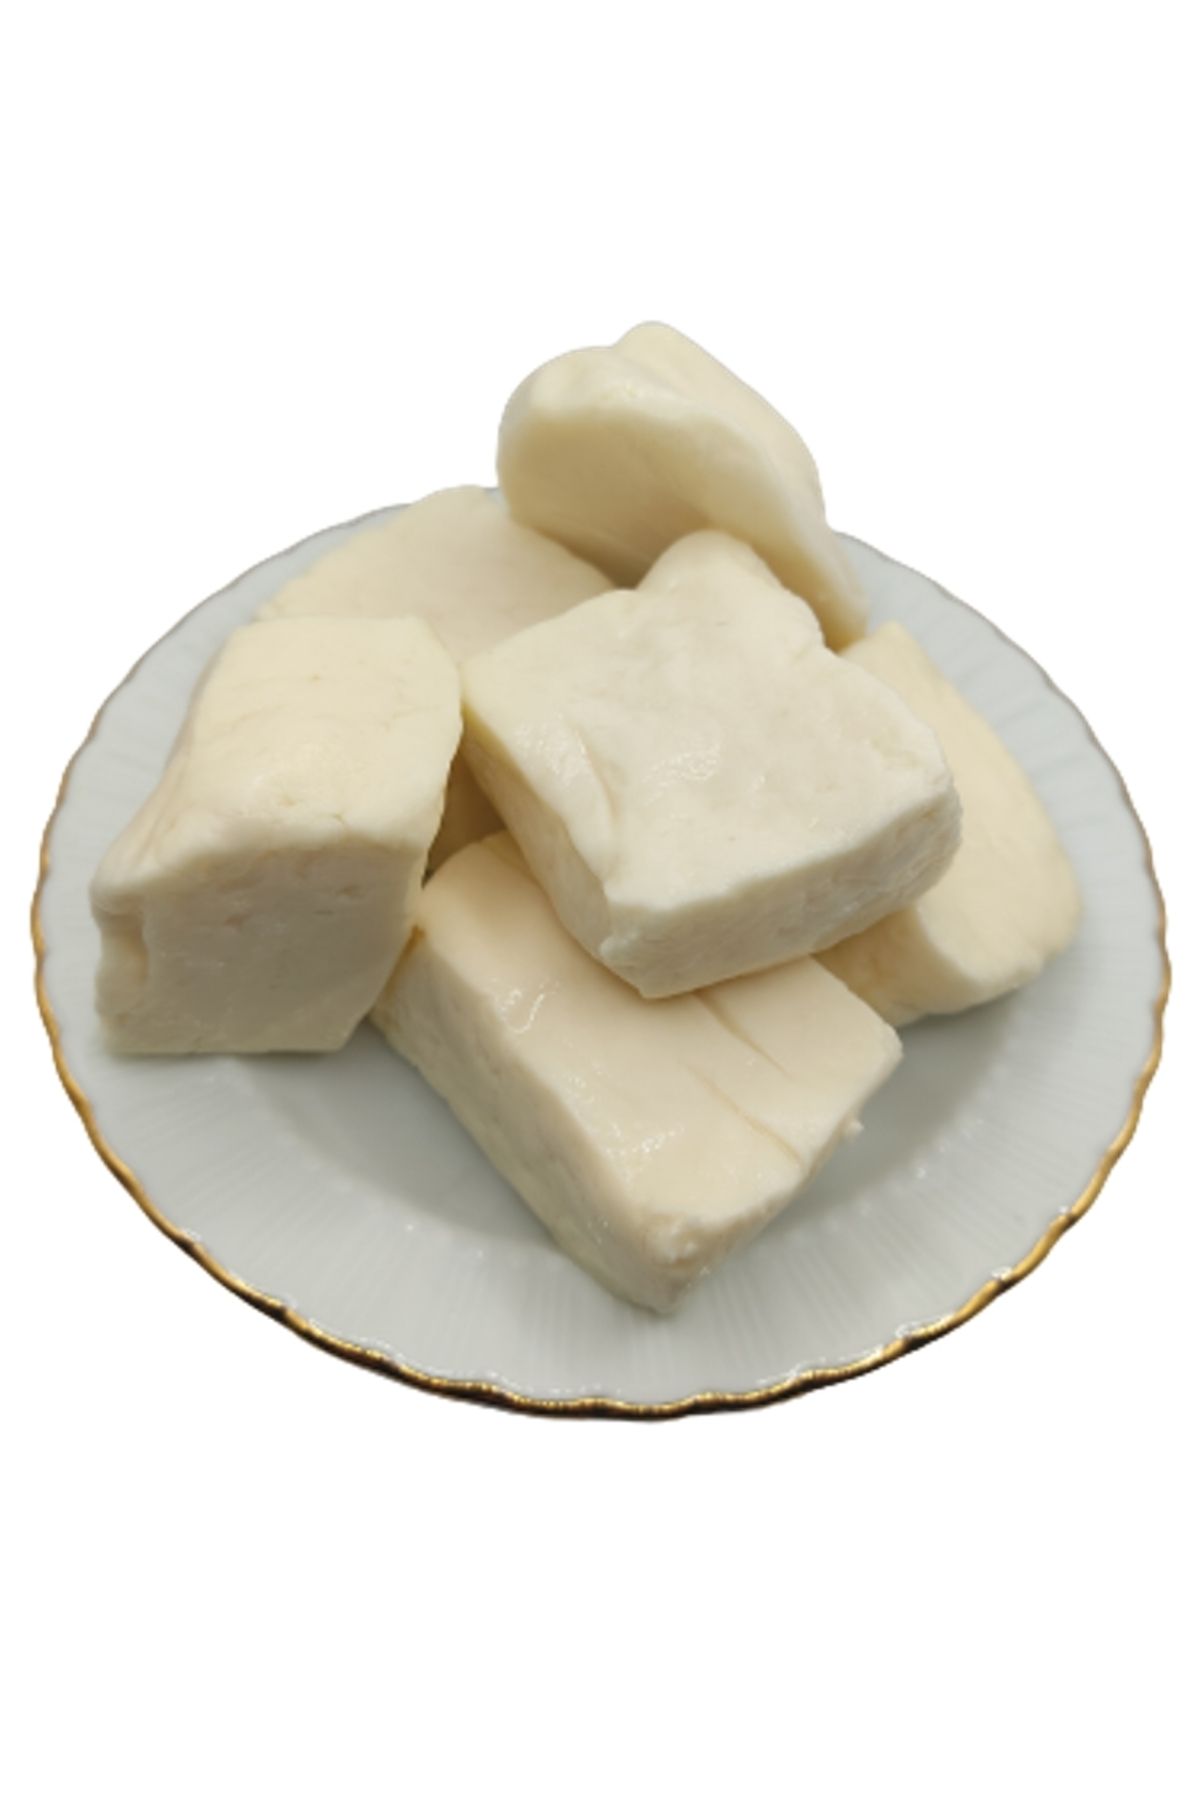 bakkal hasan Tam Yağlı Antep Peyniri (KOYUN PEYNİRİ) 13,5 Kg (1 TENEKE) -